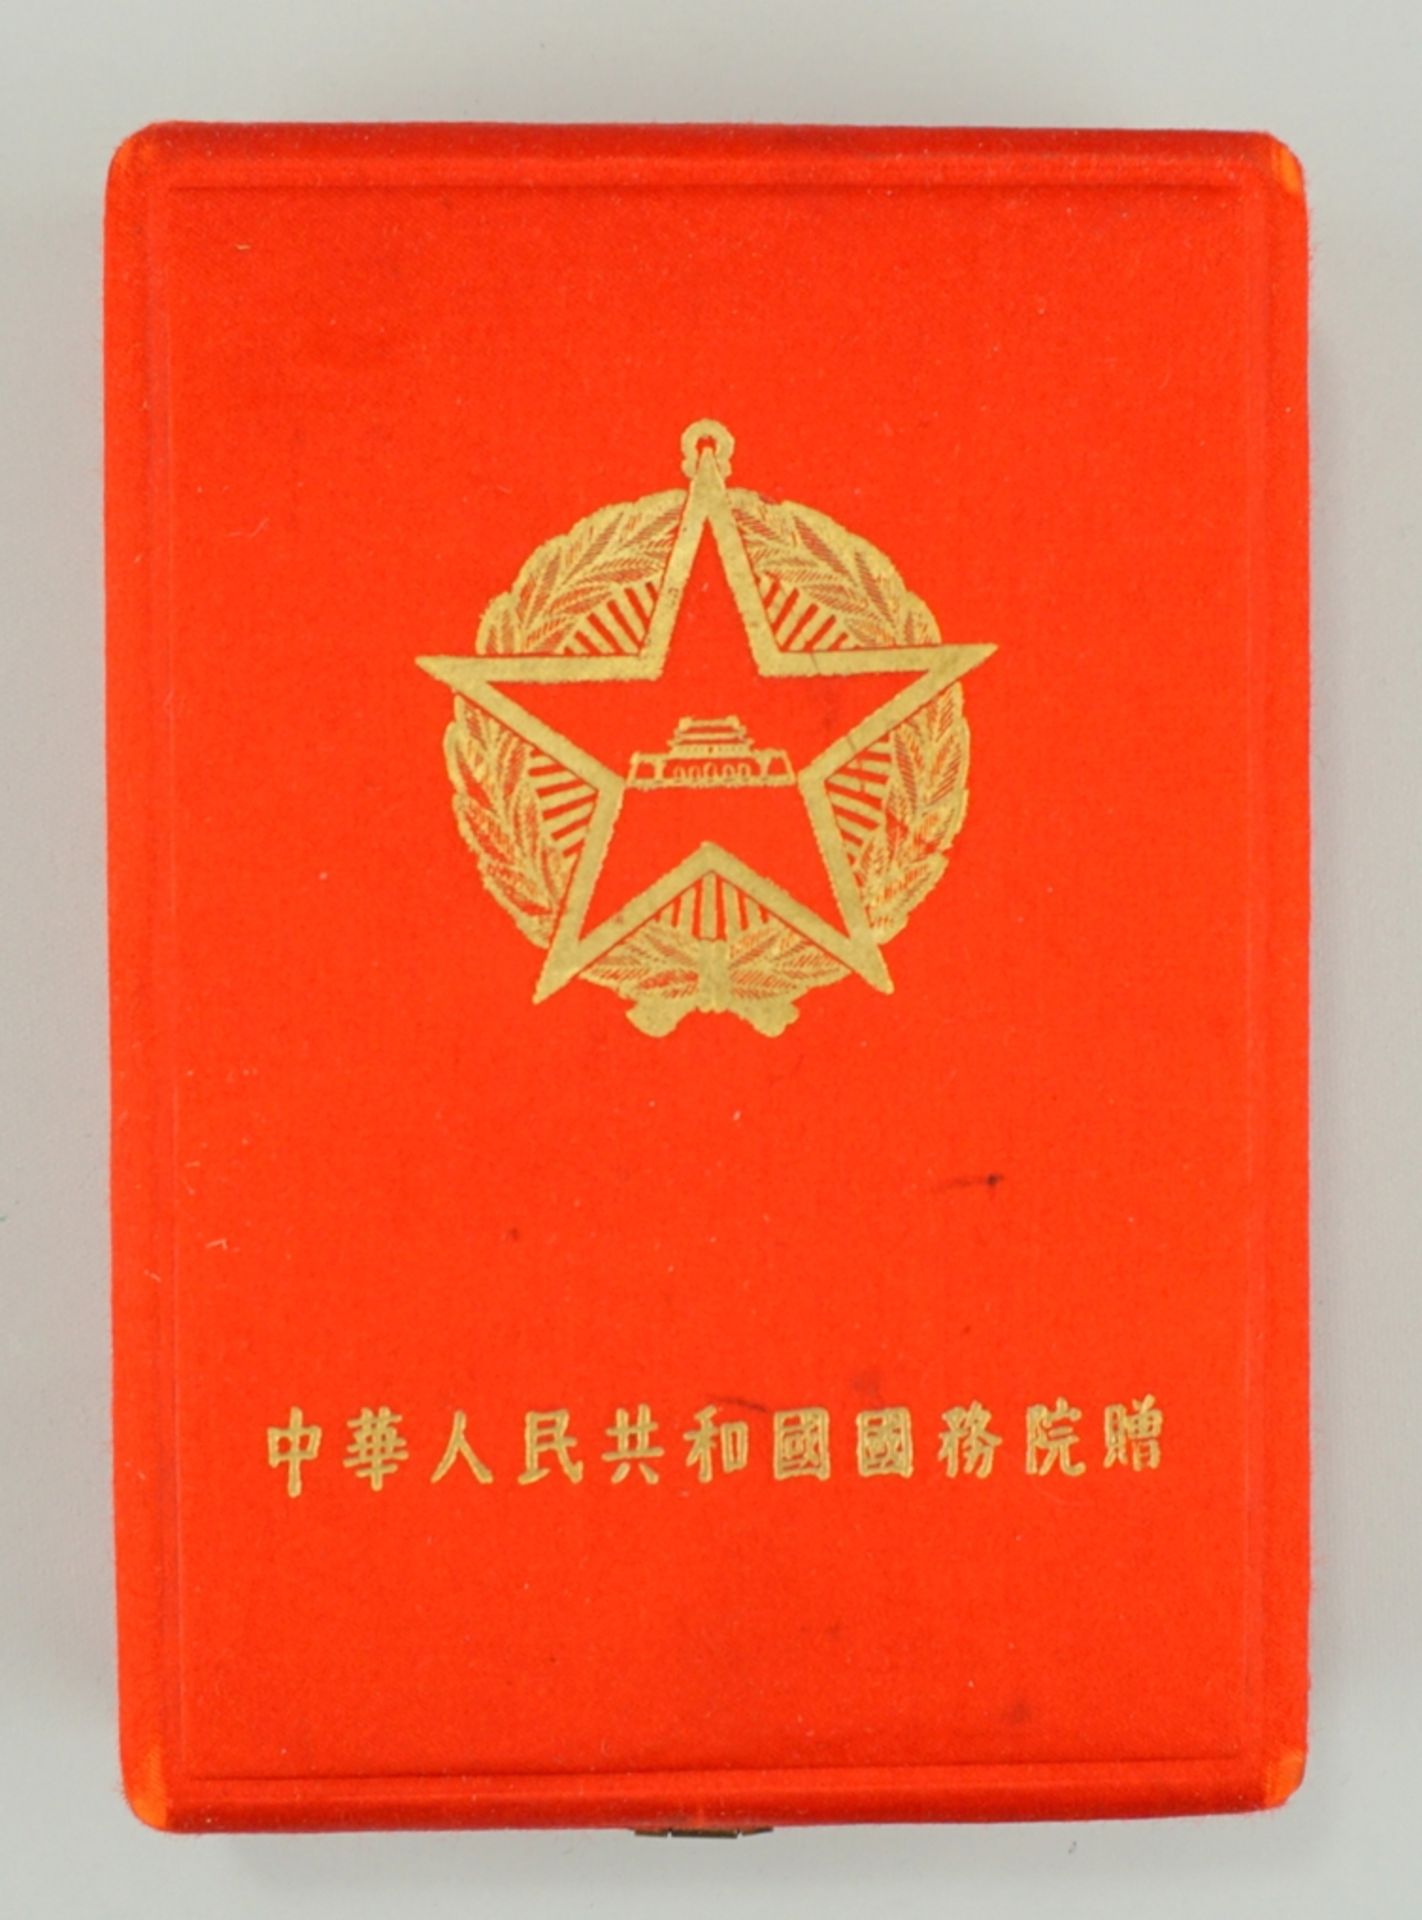 Medaille "Freundschaft" im Originaletui, China und sogn."Mao-Bibel", Mitte 20.Jh. - Bild 5 aus 5